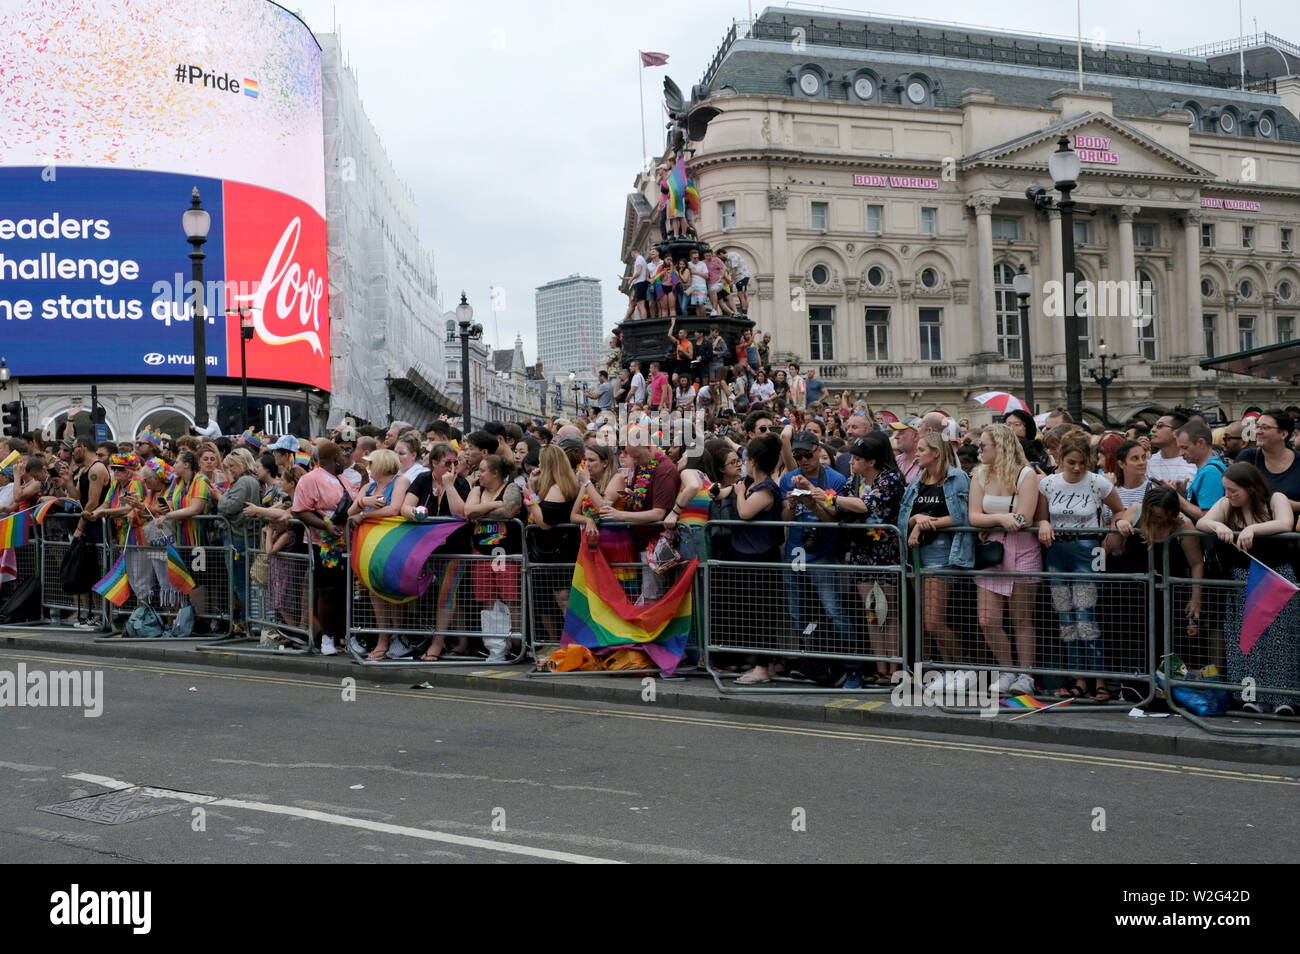 Fêtards s'attendre la parade.Des milliers de fêtards rempli les rues de Londres avec la couleur pour célébrer la fierté de la capitale. 2019 a marqué le 50e anniversaire de l'émeutes de Stonewall à New York, considéré comme l'origine de la fierté et de l'homme LGBT + mouvement. Banque D'Images